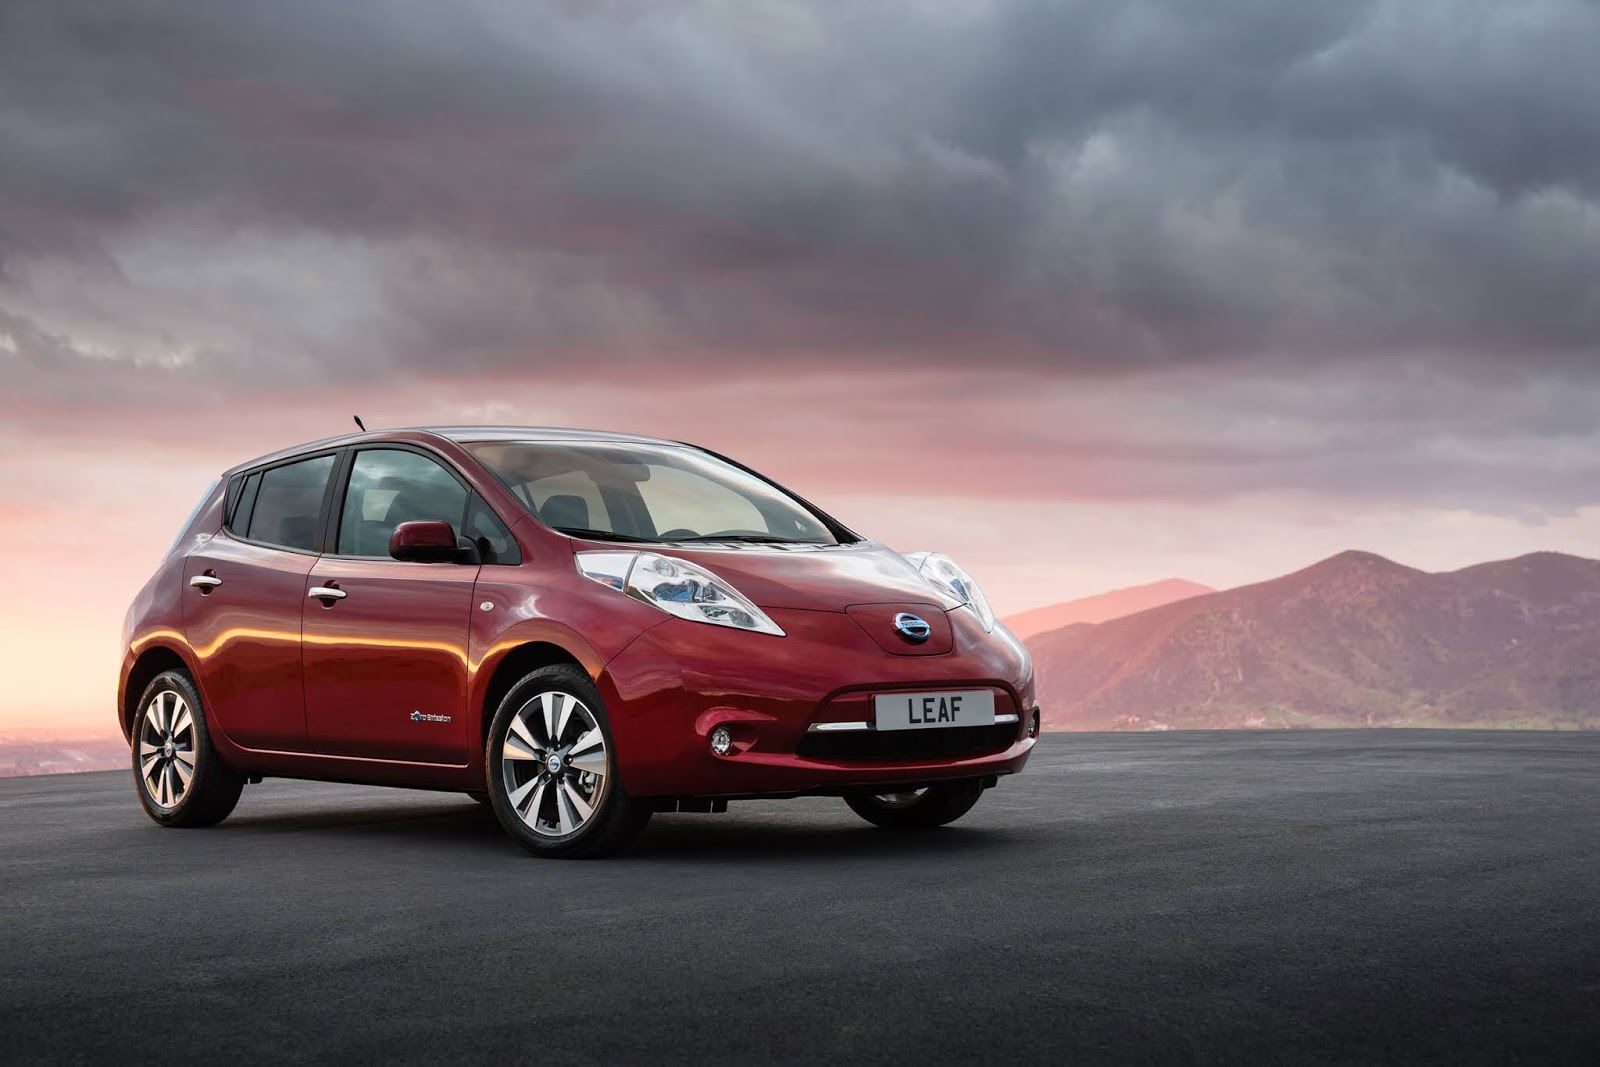 LEAF 2011 Το Nissan LEAF ξεπέρασε τις 40.000 πωλήσεις στο Ην. Βασίλειο & έγινε το "Μεταχειρισμένο Ηλεκτρικό Αυτοκίνητο της Χρονιάς"